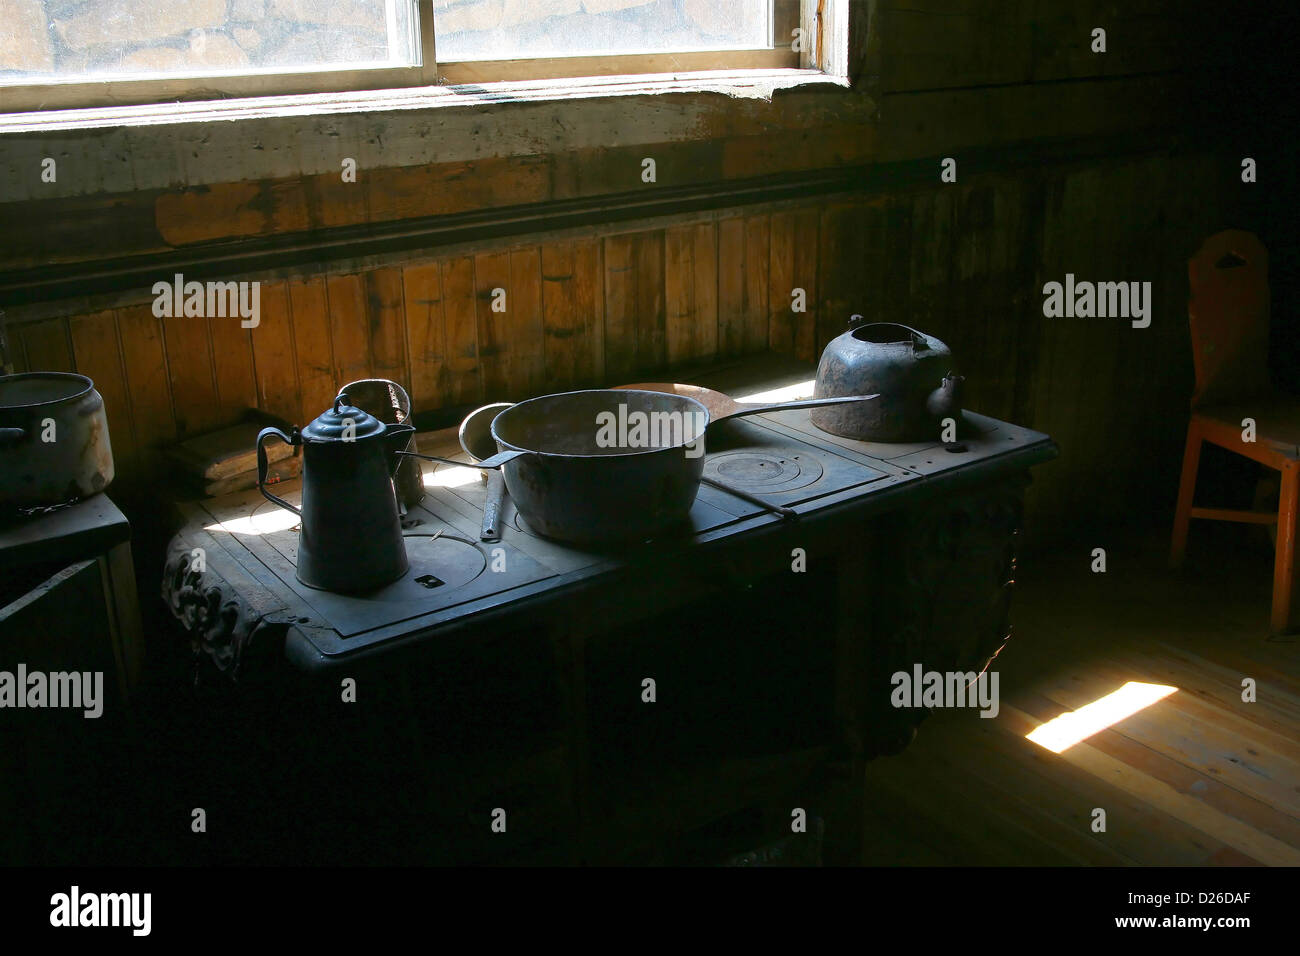 https://c8.alamy.com/comp/D26DAF/antique-cast-iron-pots-and-pans-D26DAF.jpg